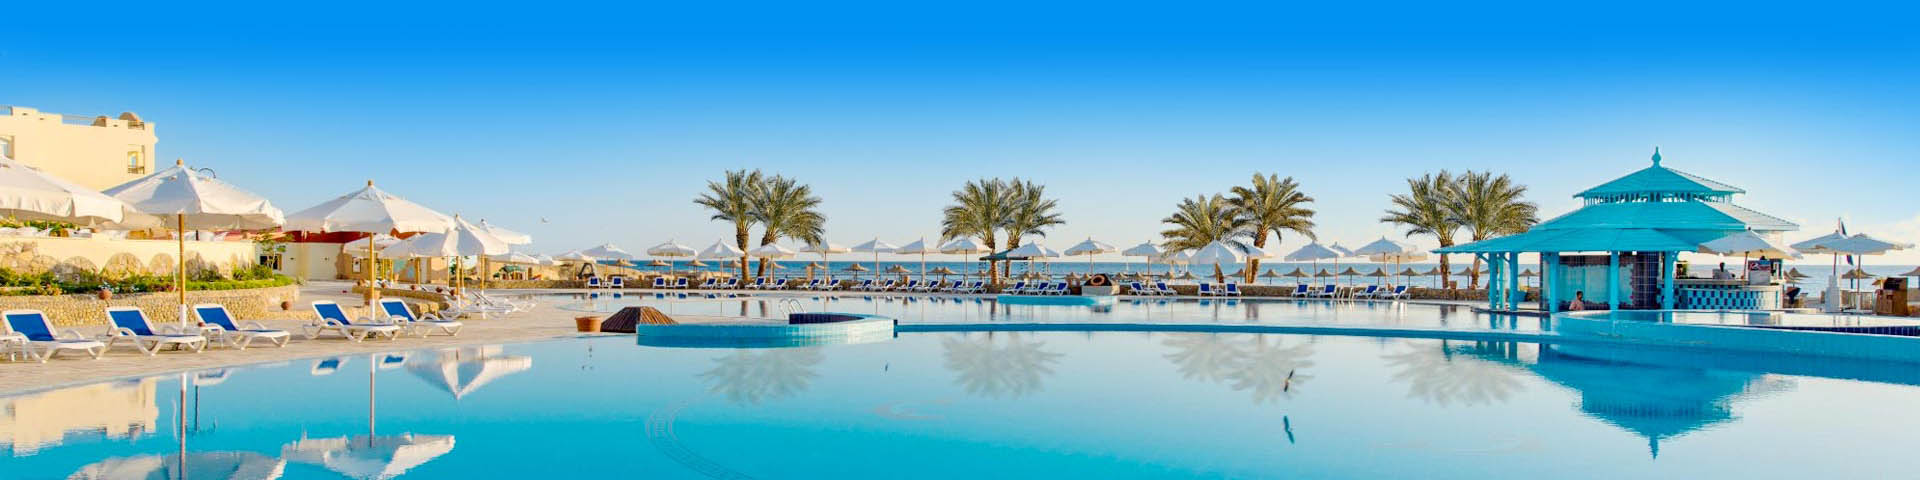 All inclusive resort in Egypte met mooi zwembad